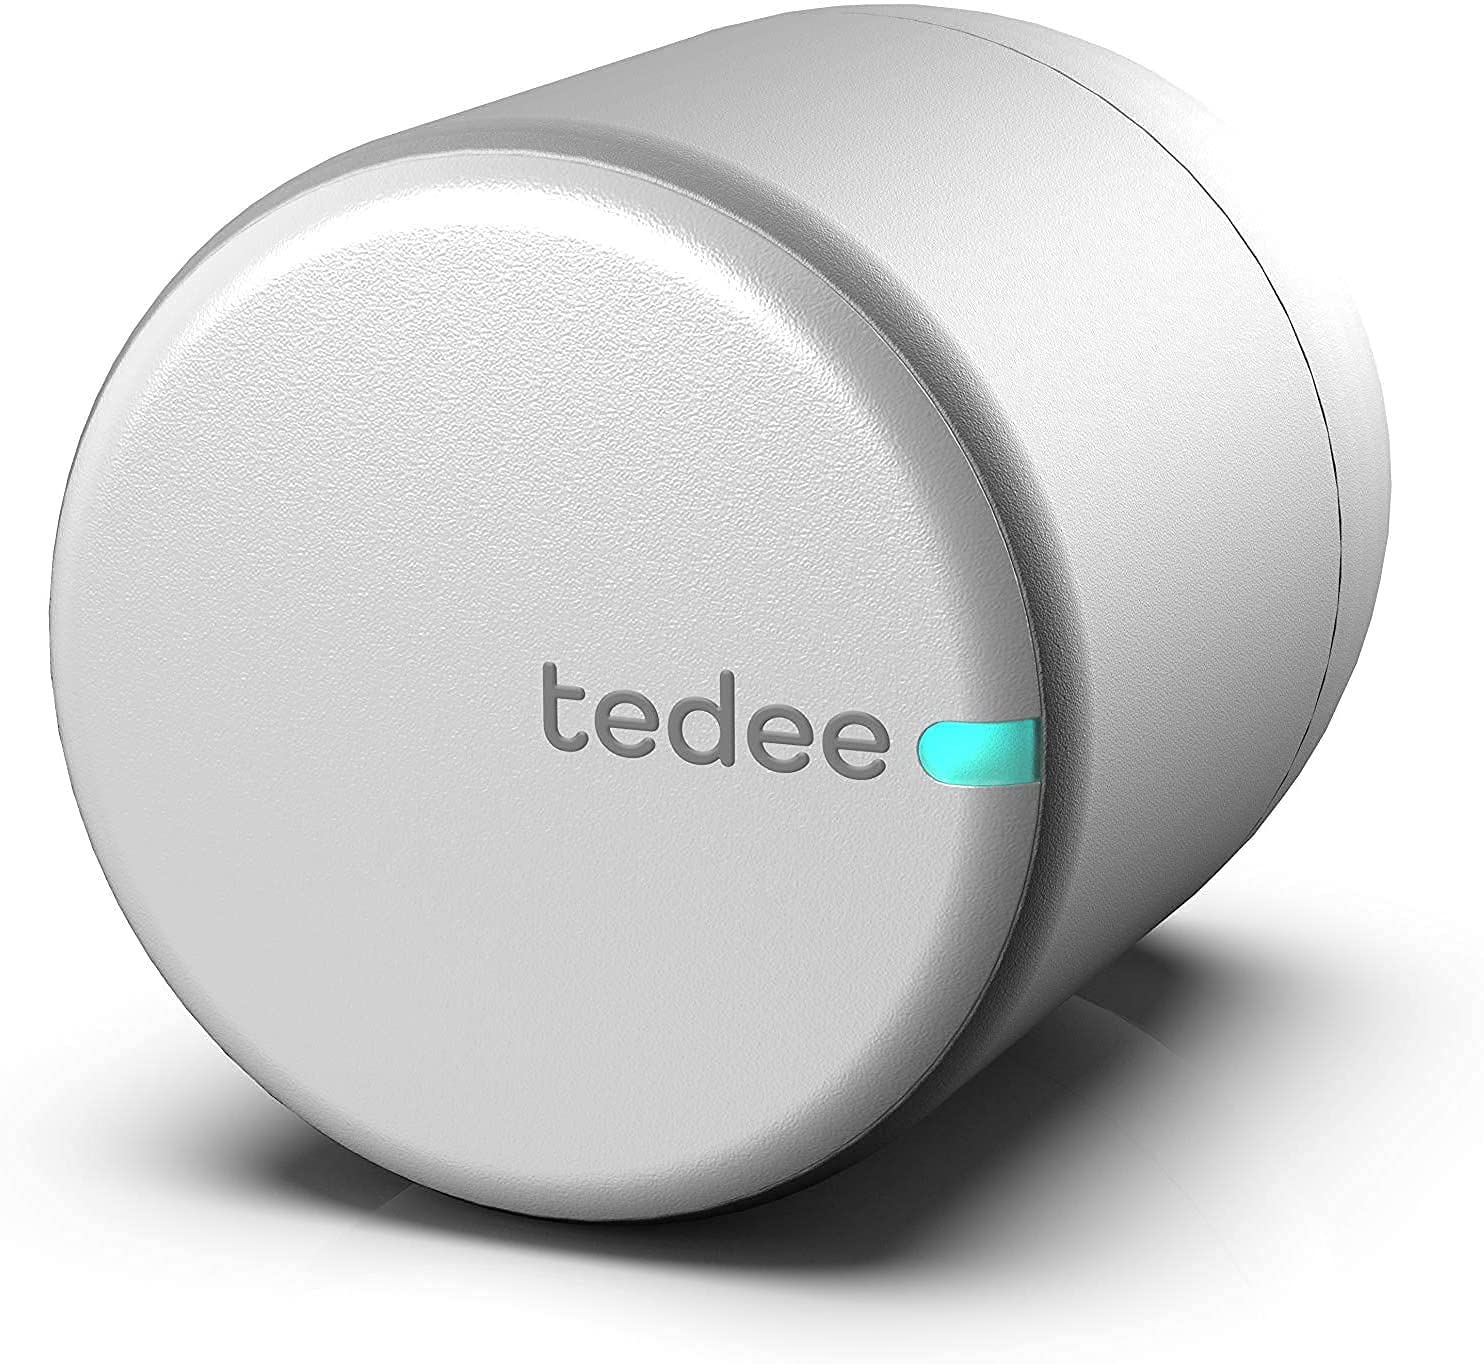 Tedee Smart Lock Pro TLV1.0B HK Online Shopping on Tedee Smart